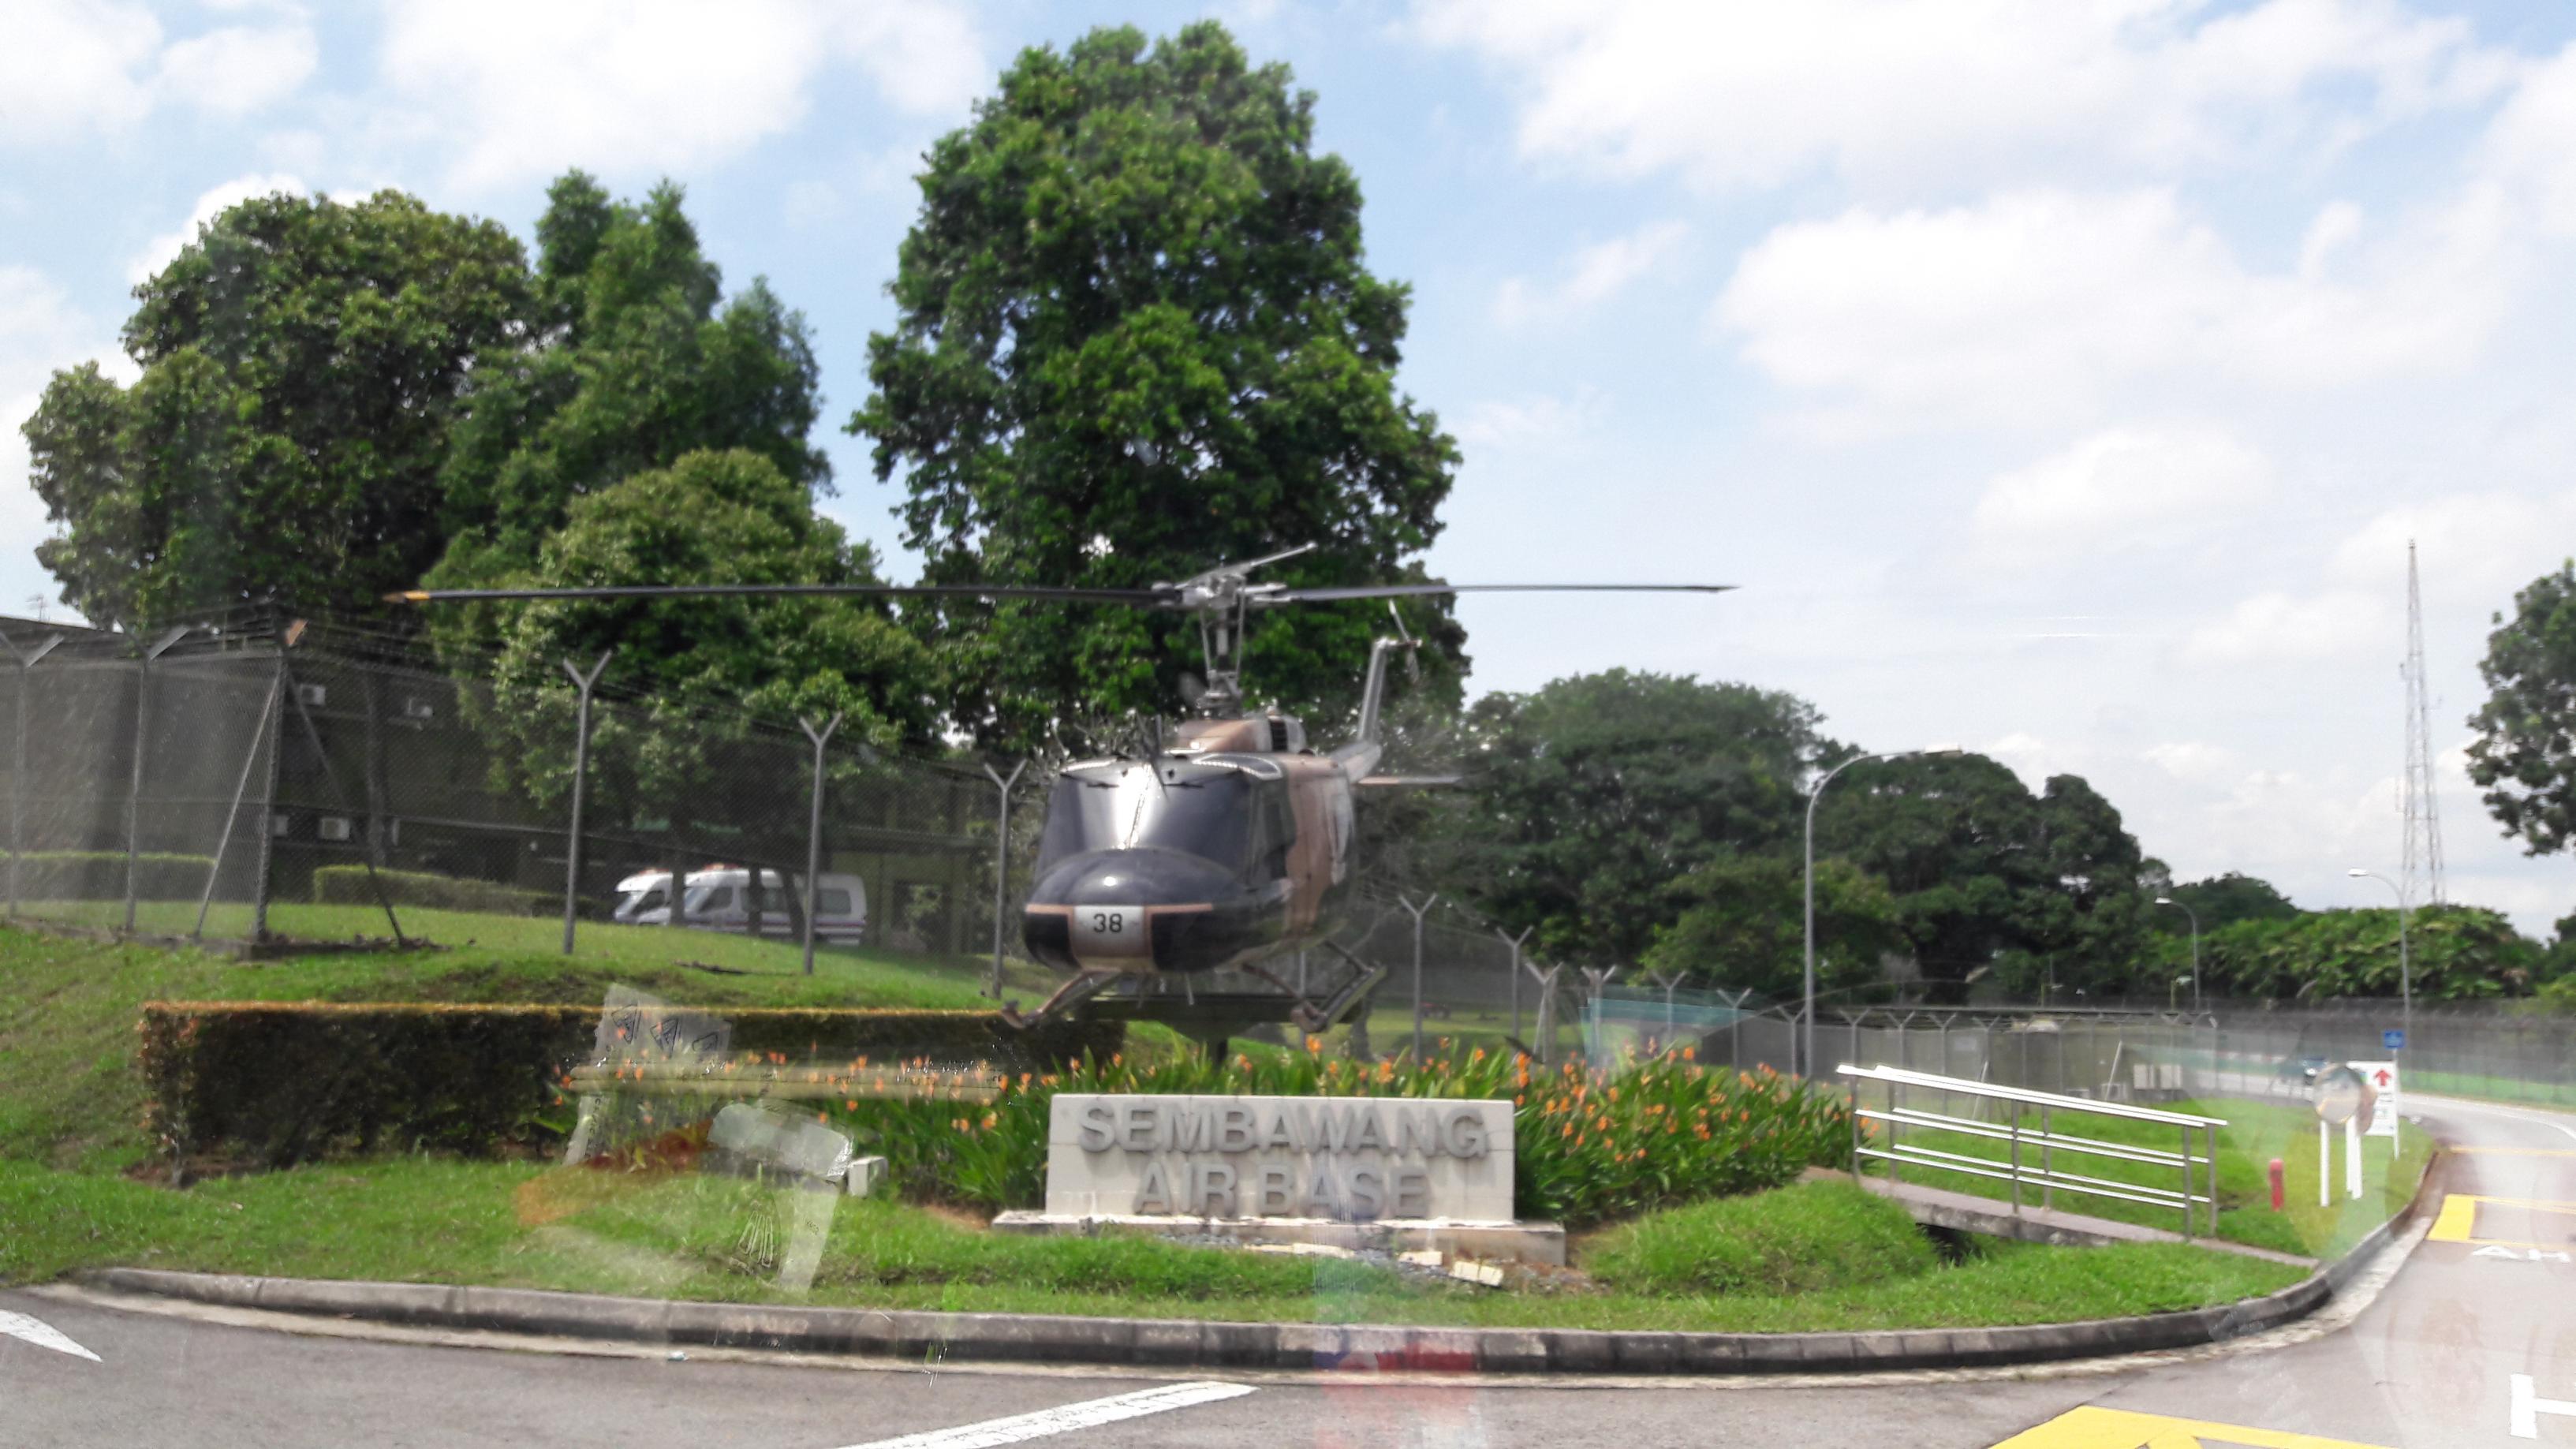 Naam: UH-1 , Sembawang Air Base..jpg
Bekeken: 273
Grootte: 518,1 KB